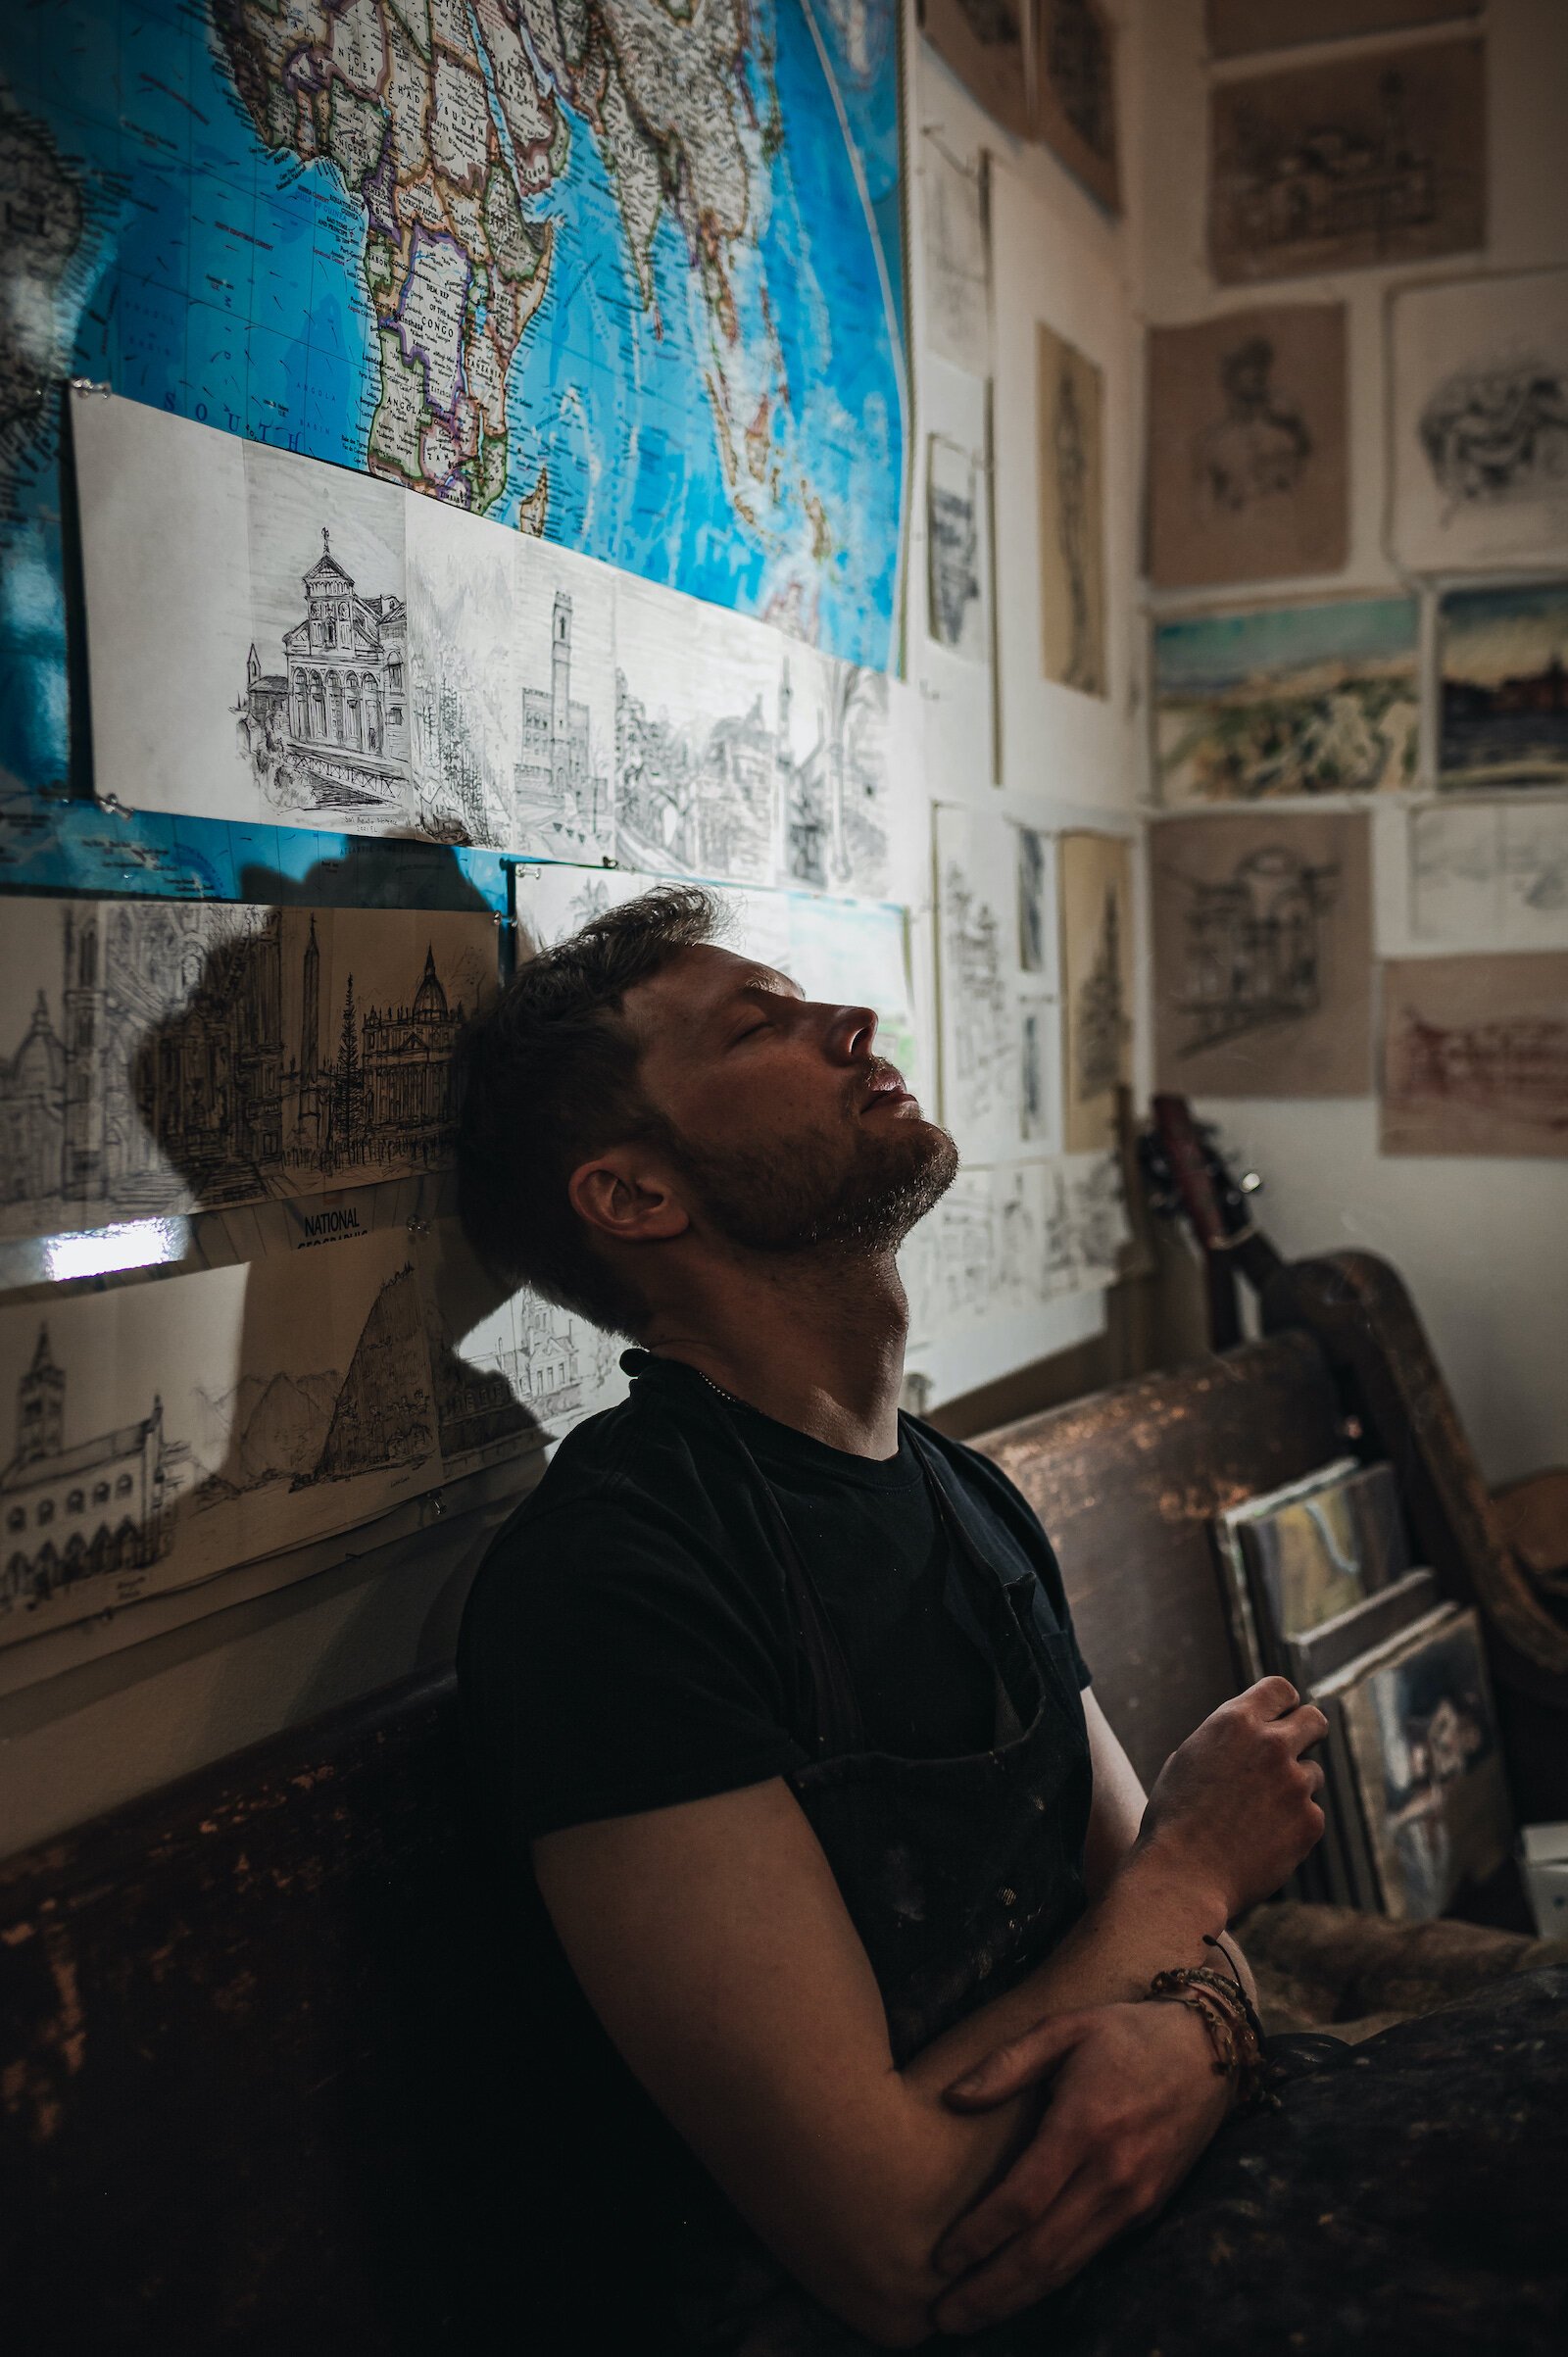 Artist Peter Lupkin in his studio.